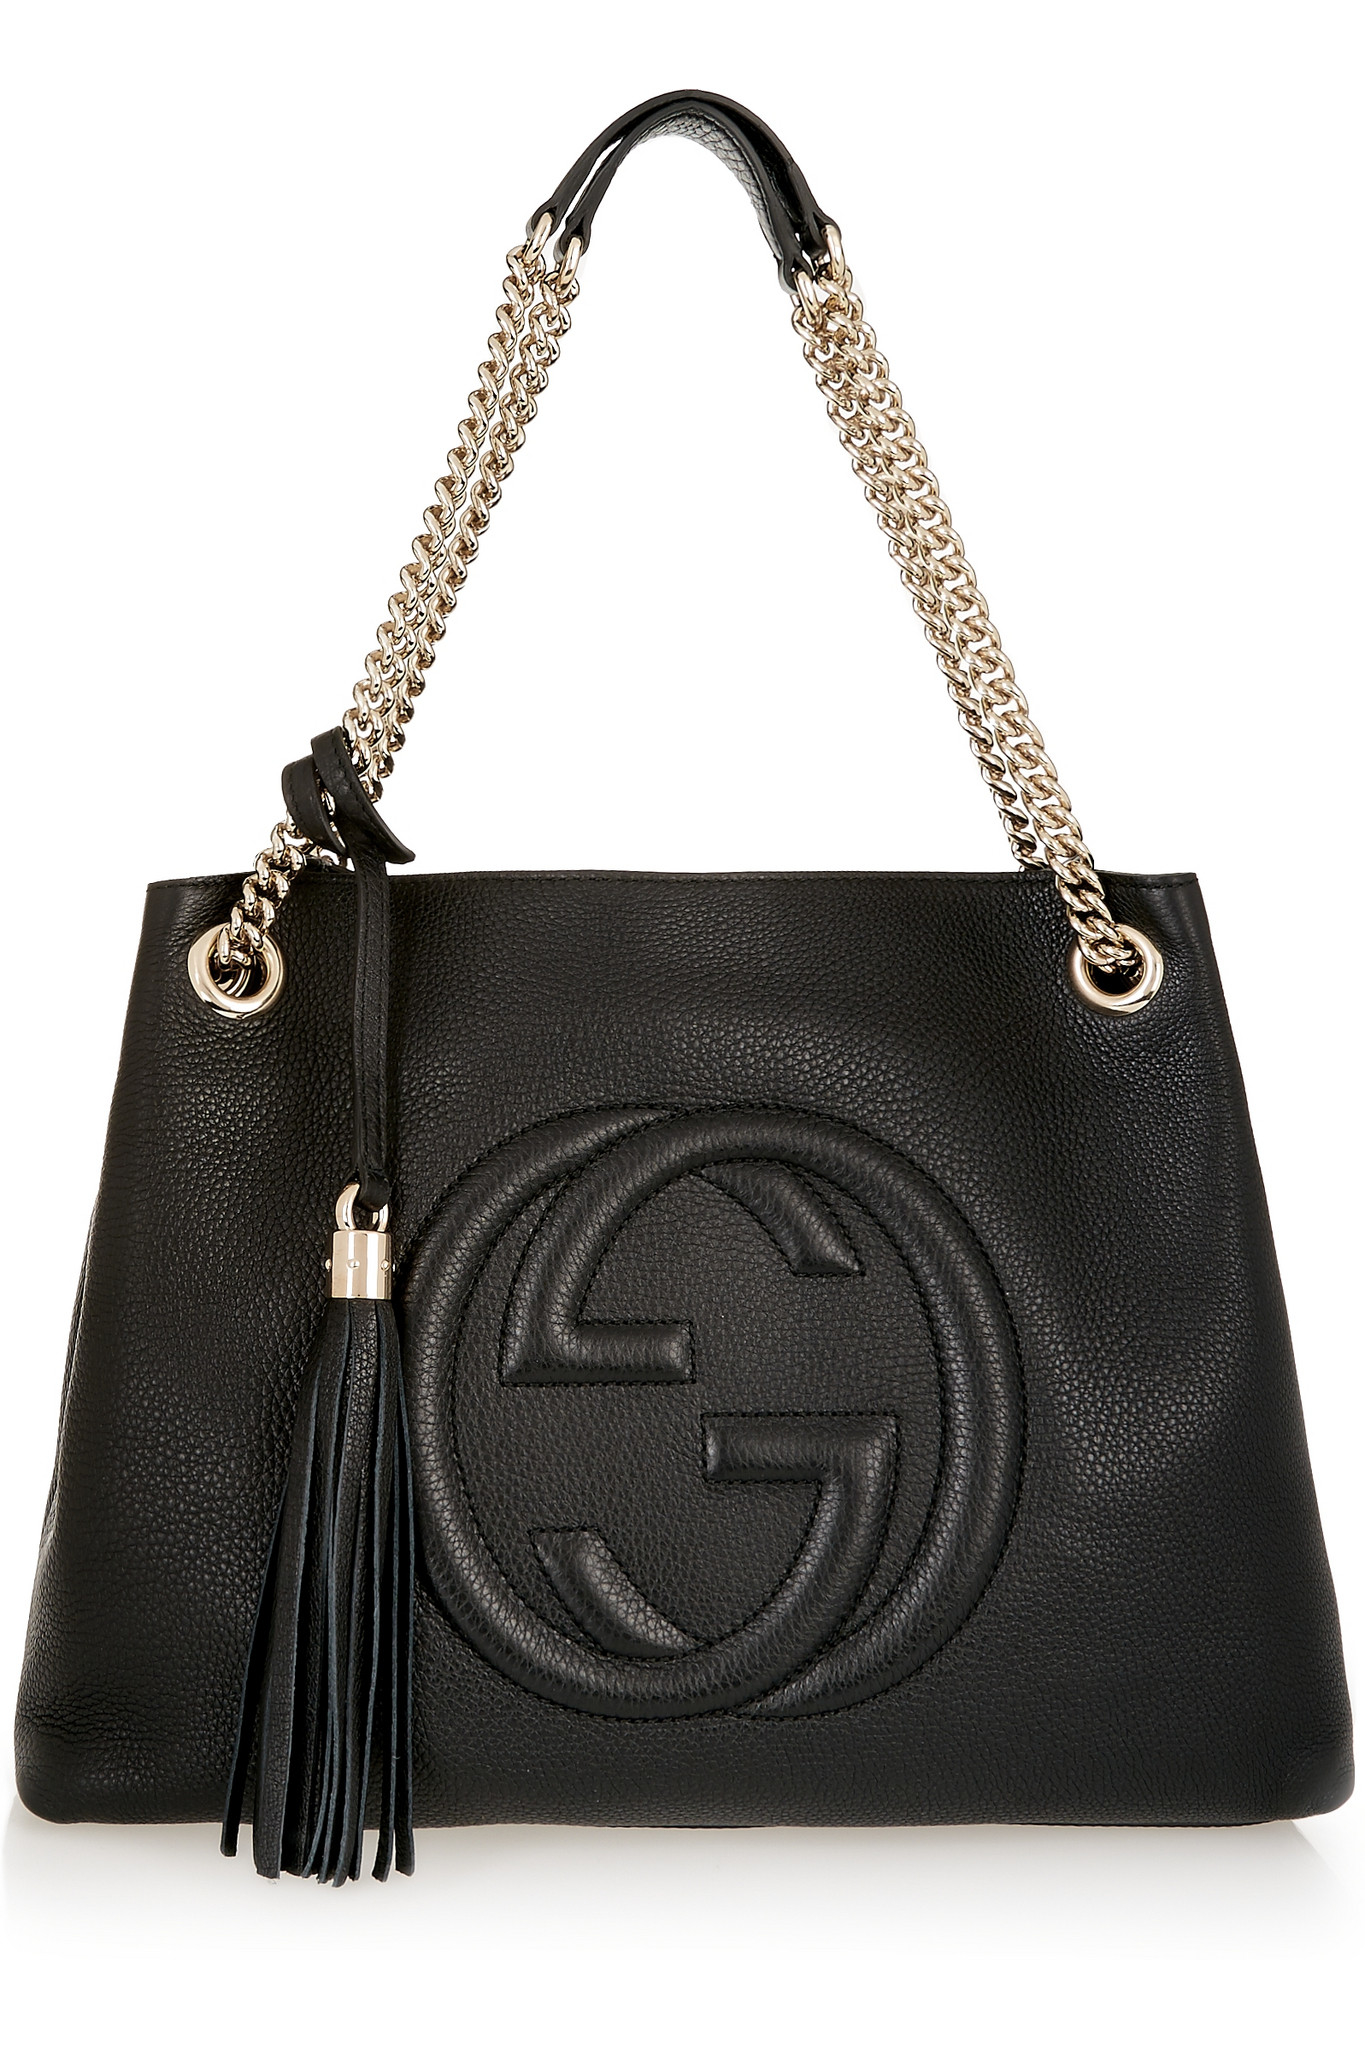 Gucci Soho Chain Bag Black | semashow.com